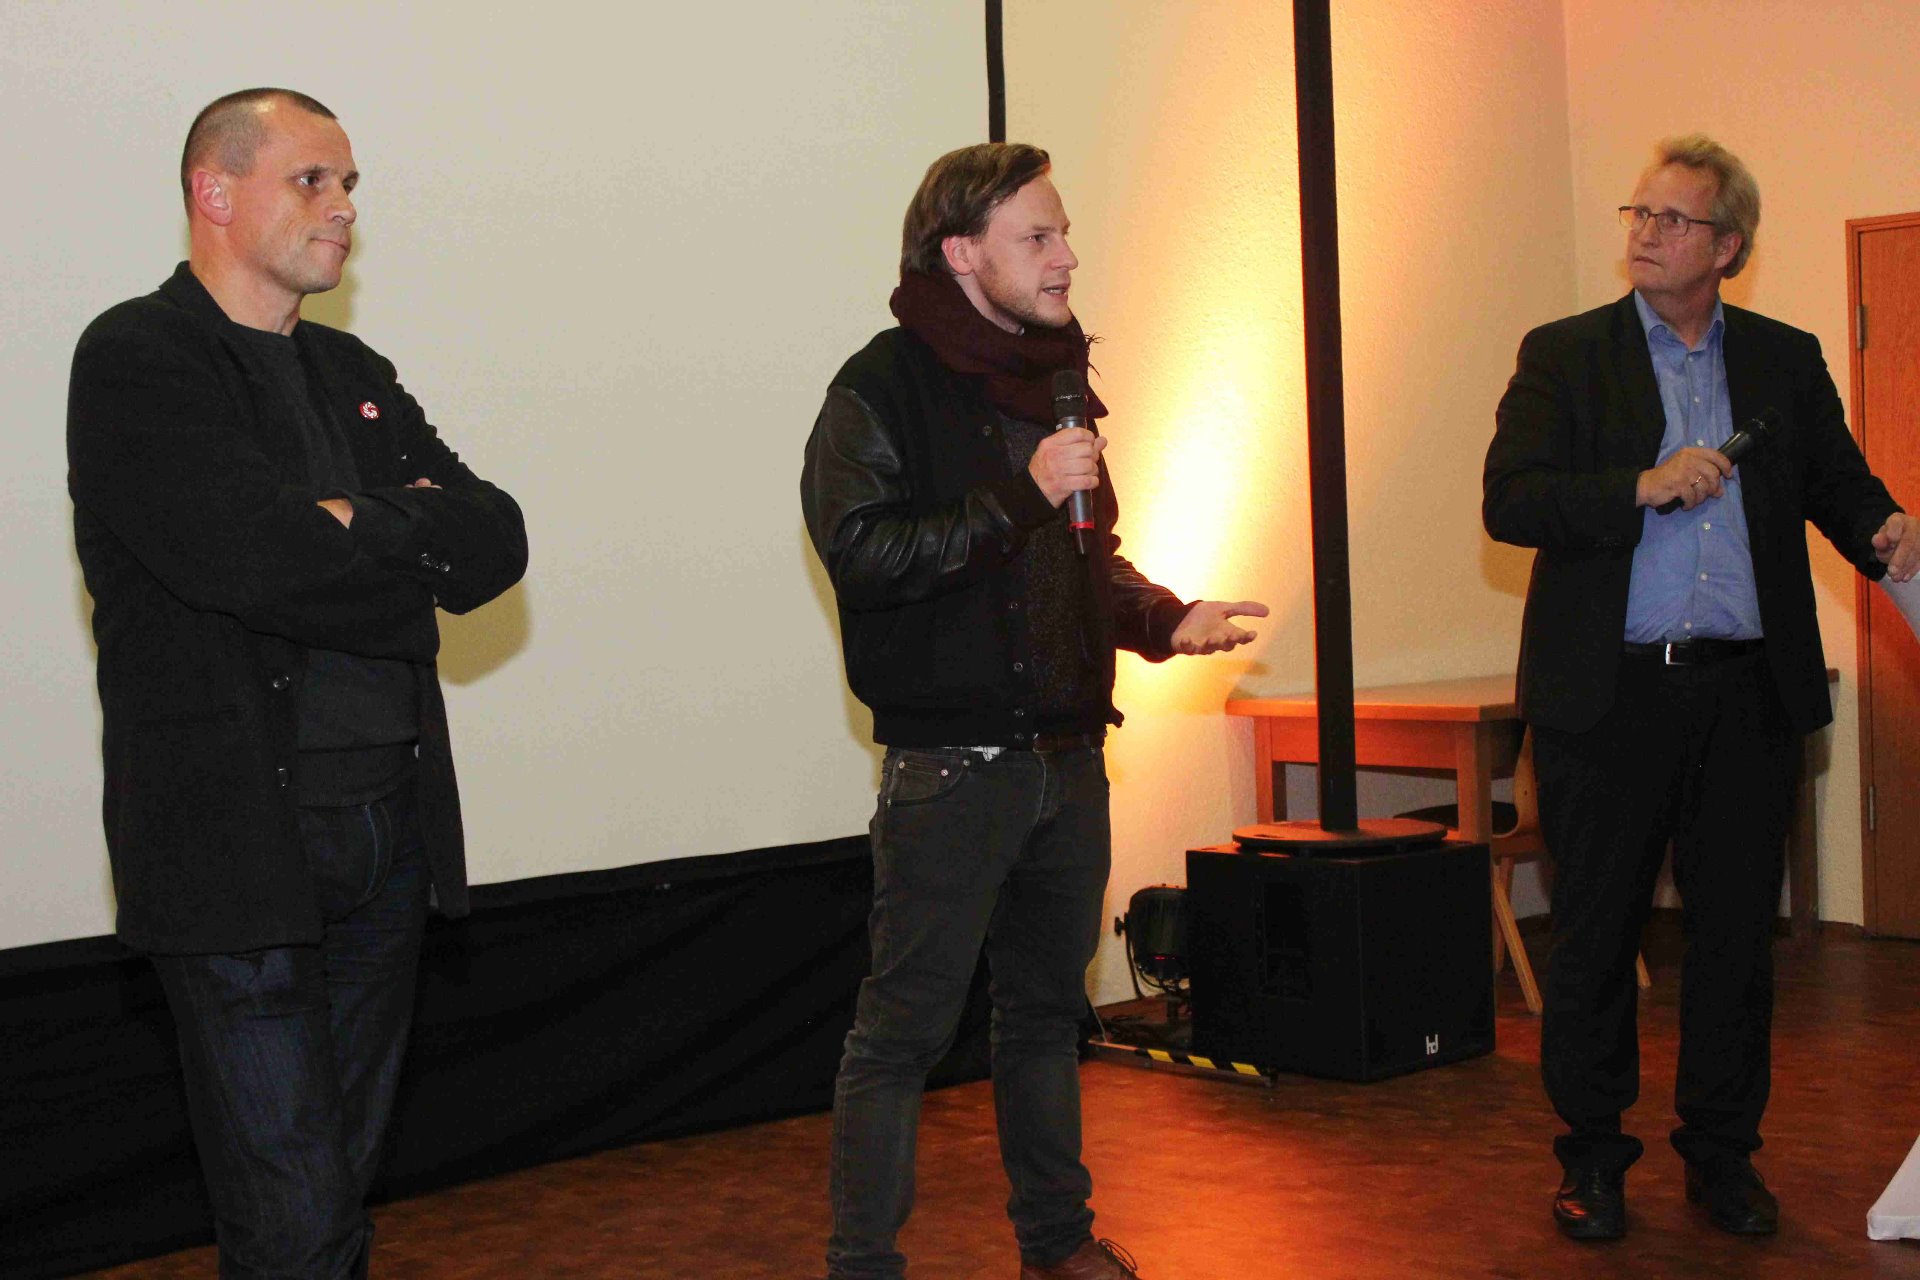 Festivalleiter Dr. Michael Doh, Regisseur Matthias Koßmehl und Moderator N.N.